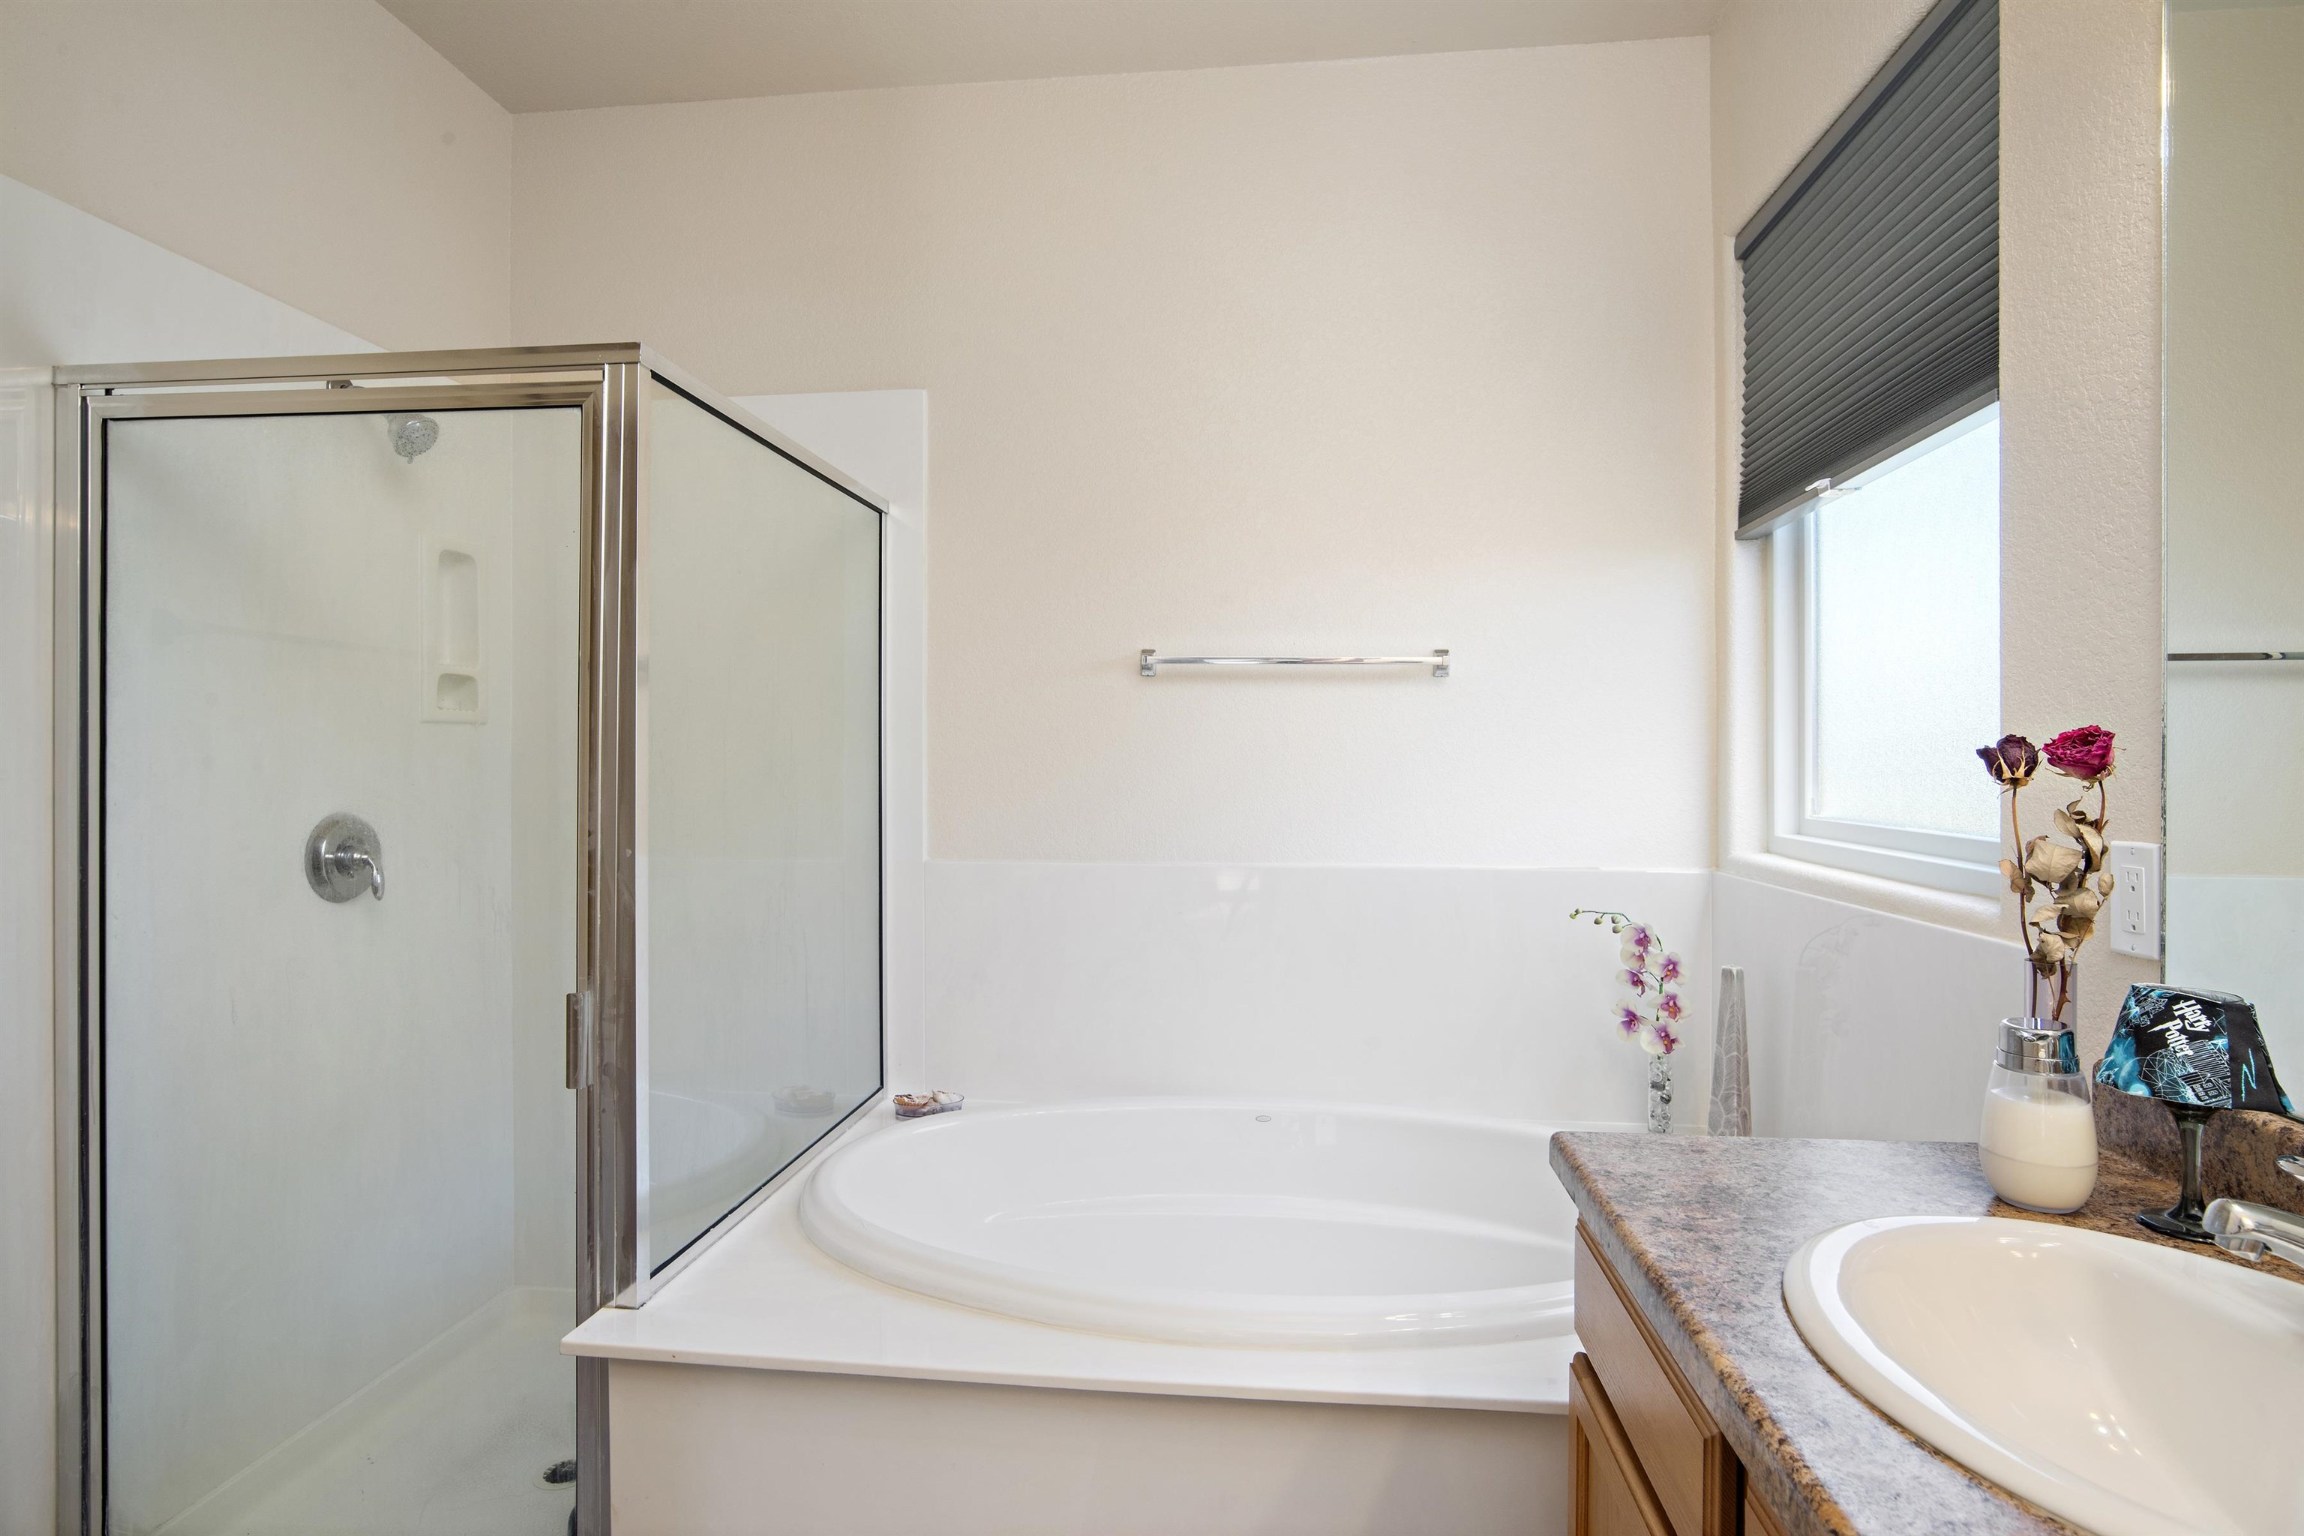 4472 Contenta Ridge, Santa Fe, New Mexico 87507, 3 Bedrooms Bedrooms, ,2 BathroomsBathrooms,Residential,For Sale,4472 Contenta Ridge,202202073